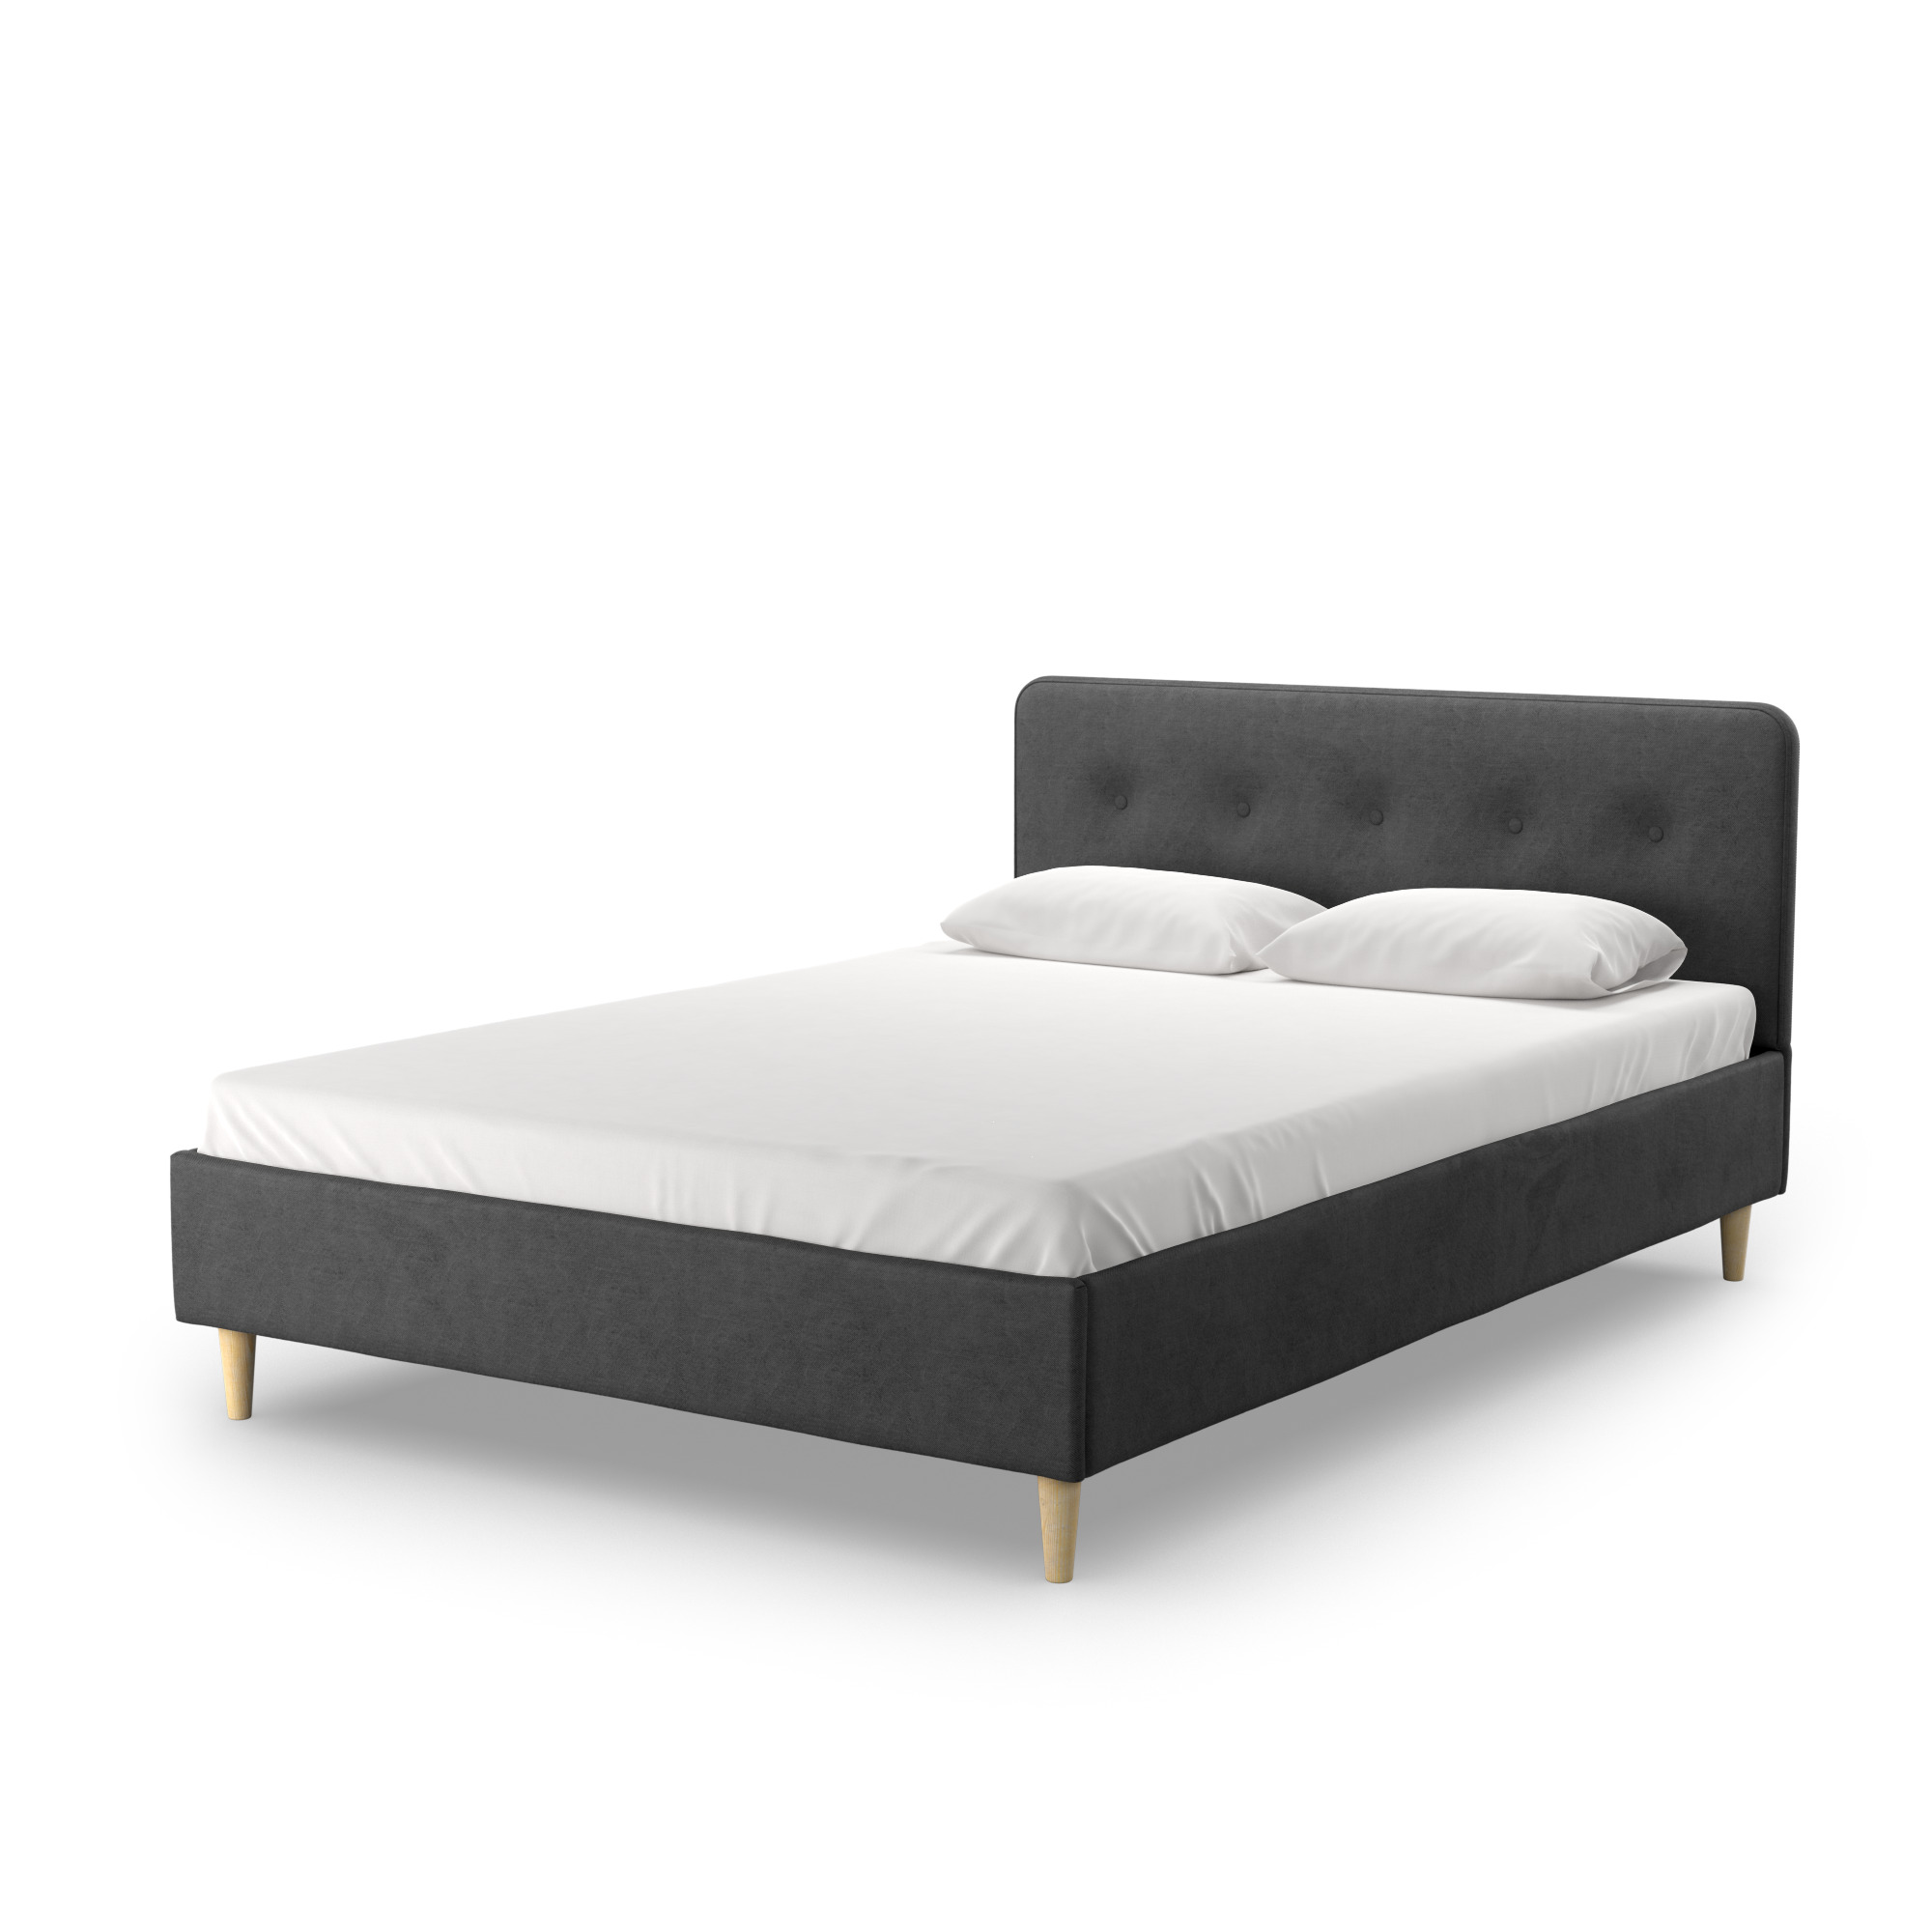 Кровать двуспальная Salotti Дримс 160, велюр, ткань Тако, темно-серый, 160x200